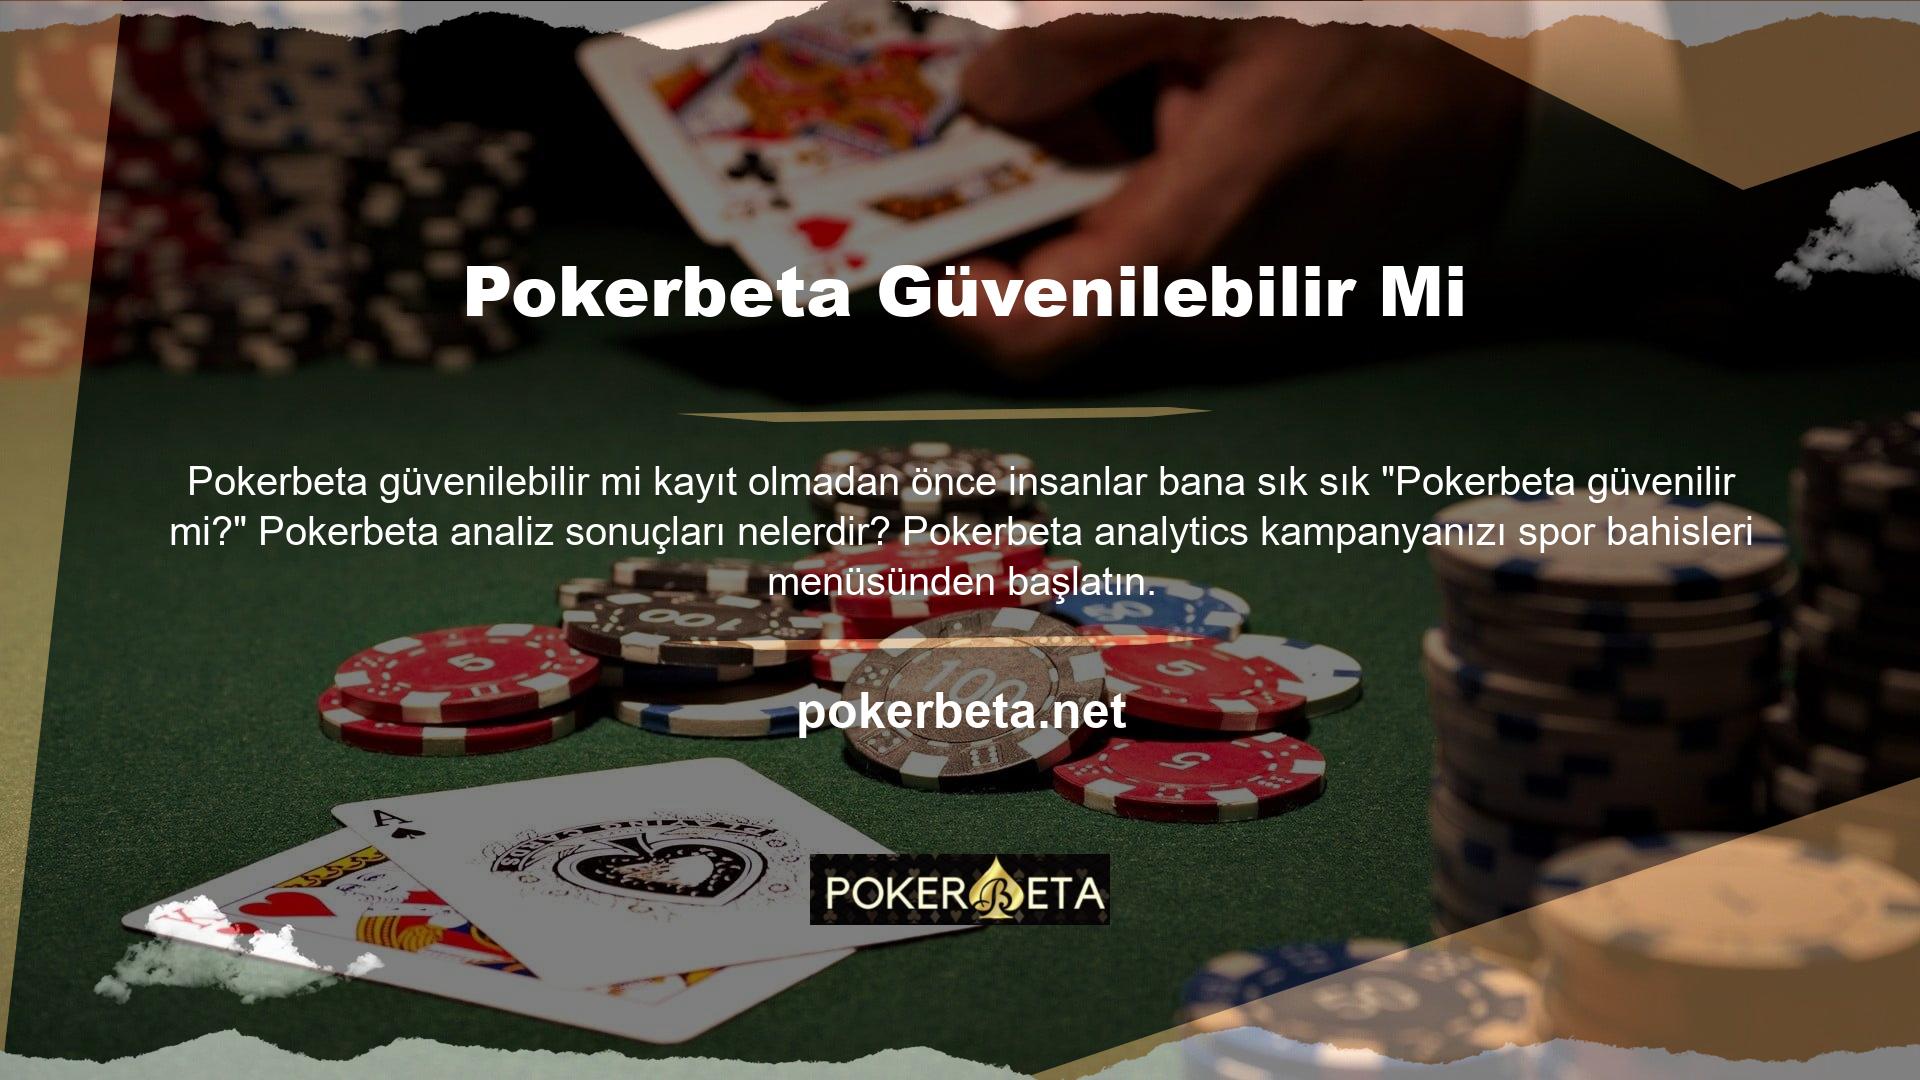 Pokerbeta her zaman elit kategoride yer almış ve sürekli olarak yeni kullanıcılar çeken bir canlı bahis sitesidir